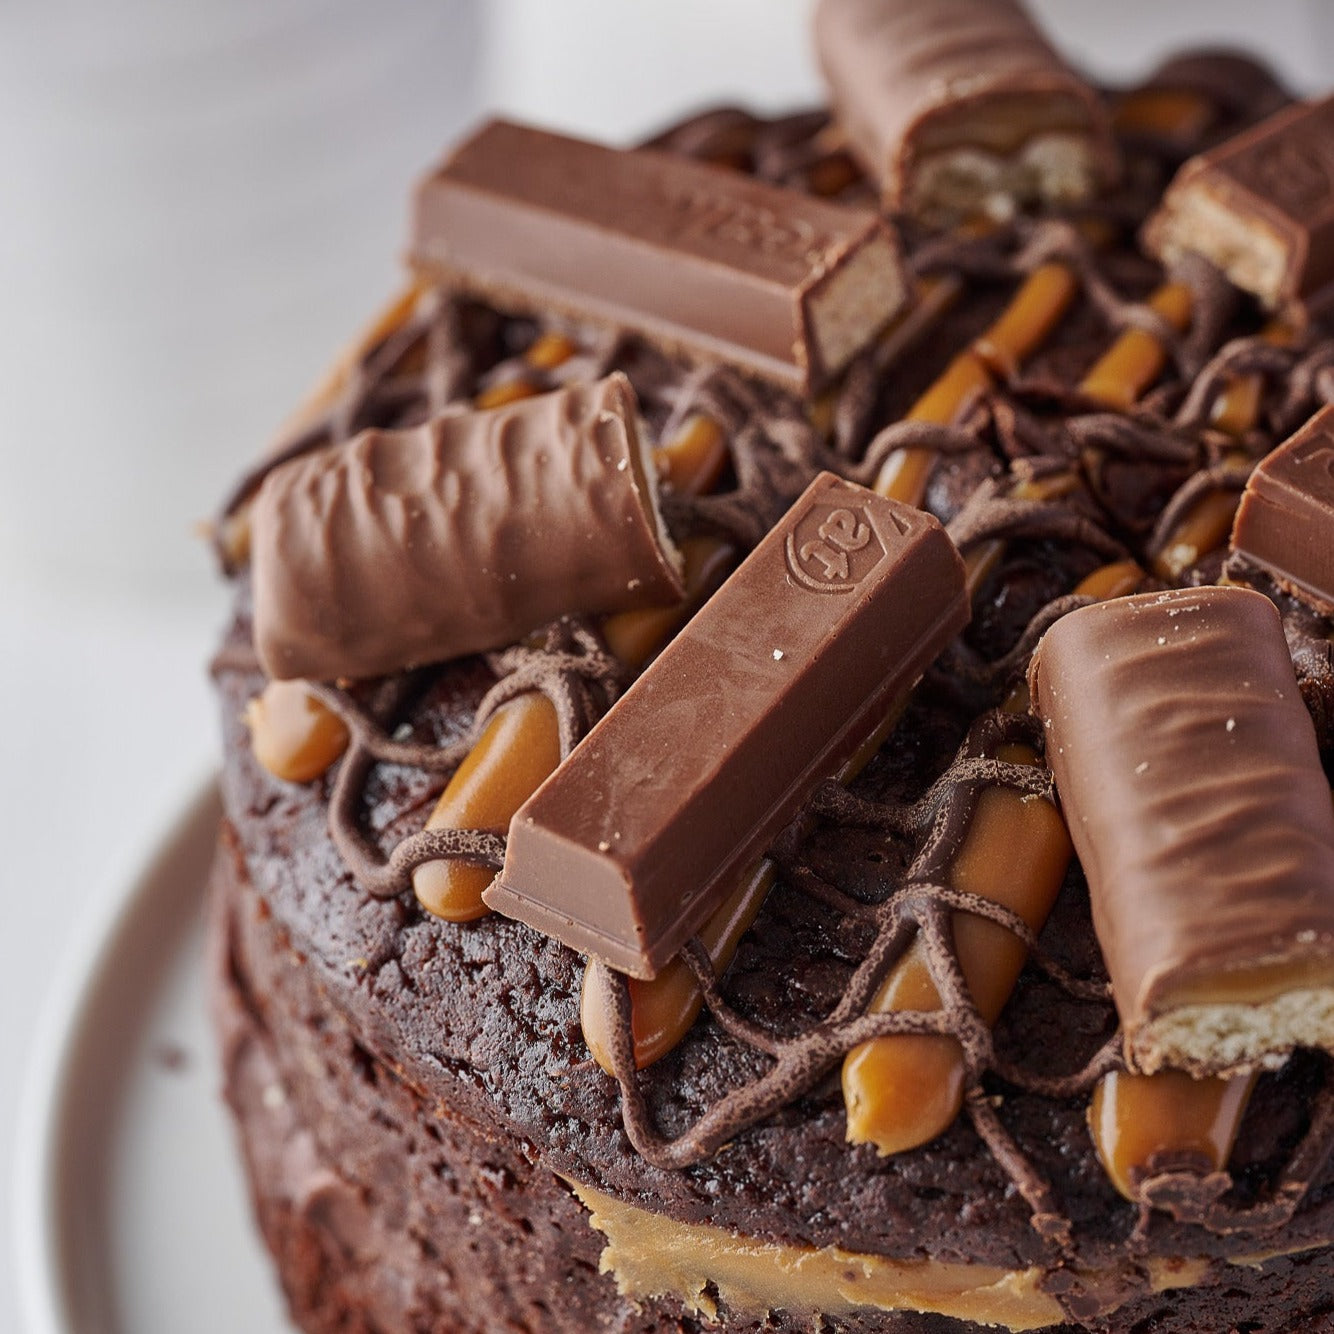 Kit Kat Cake — Food | Kit kat cake, Kit kat, Chocolate bar cakes